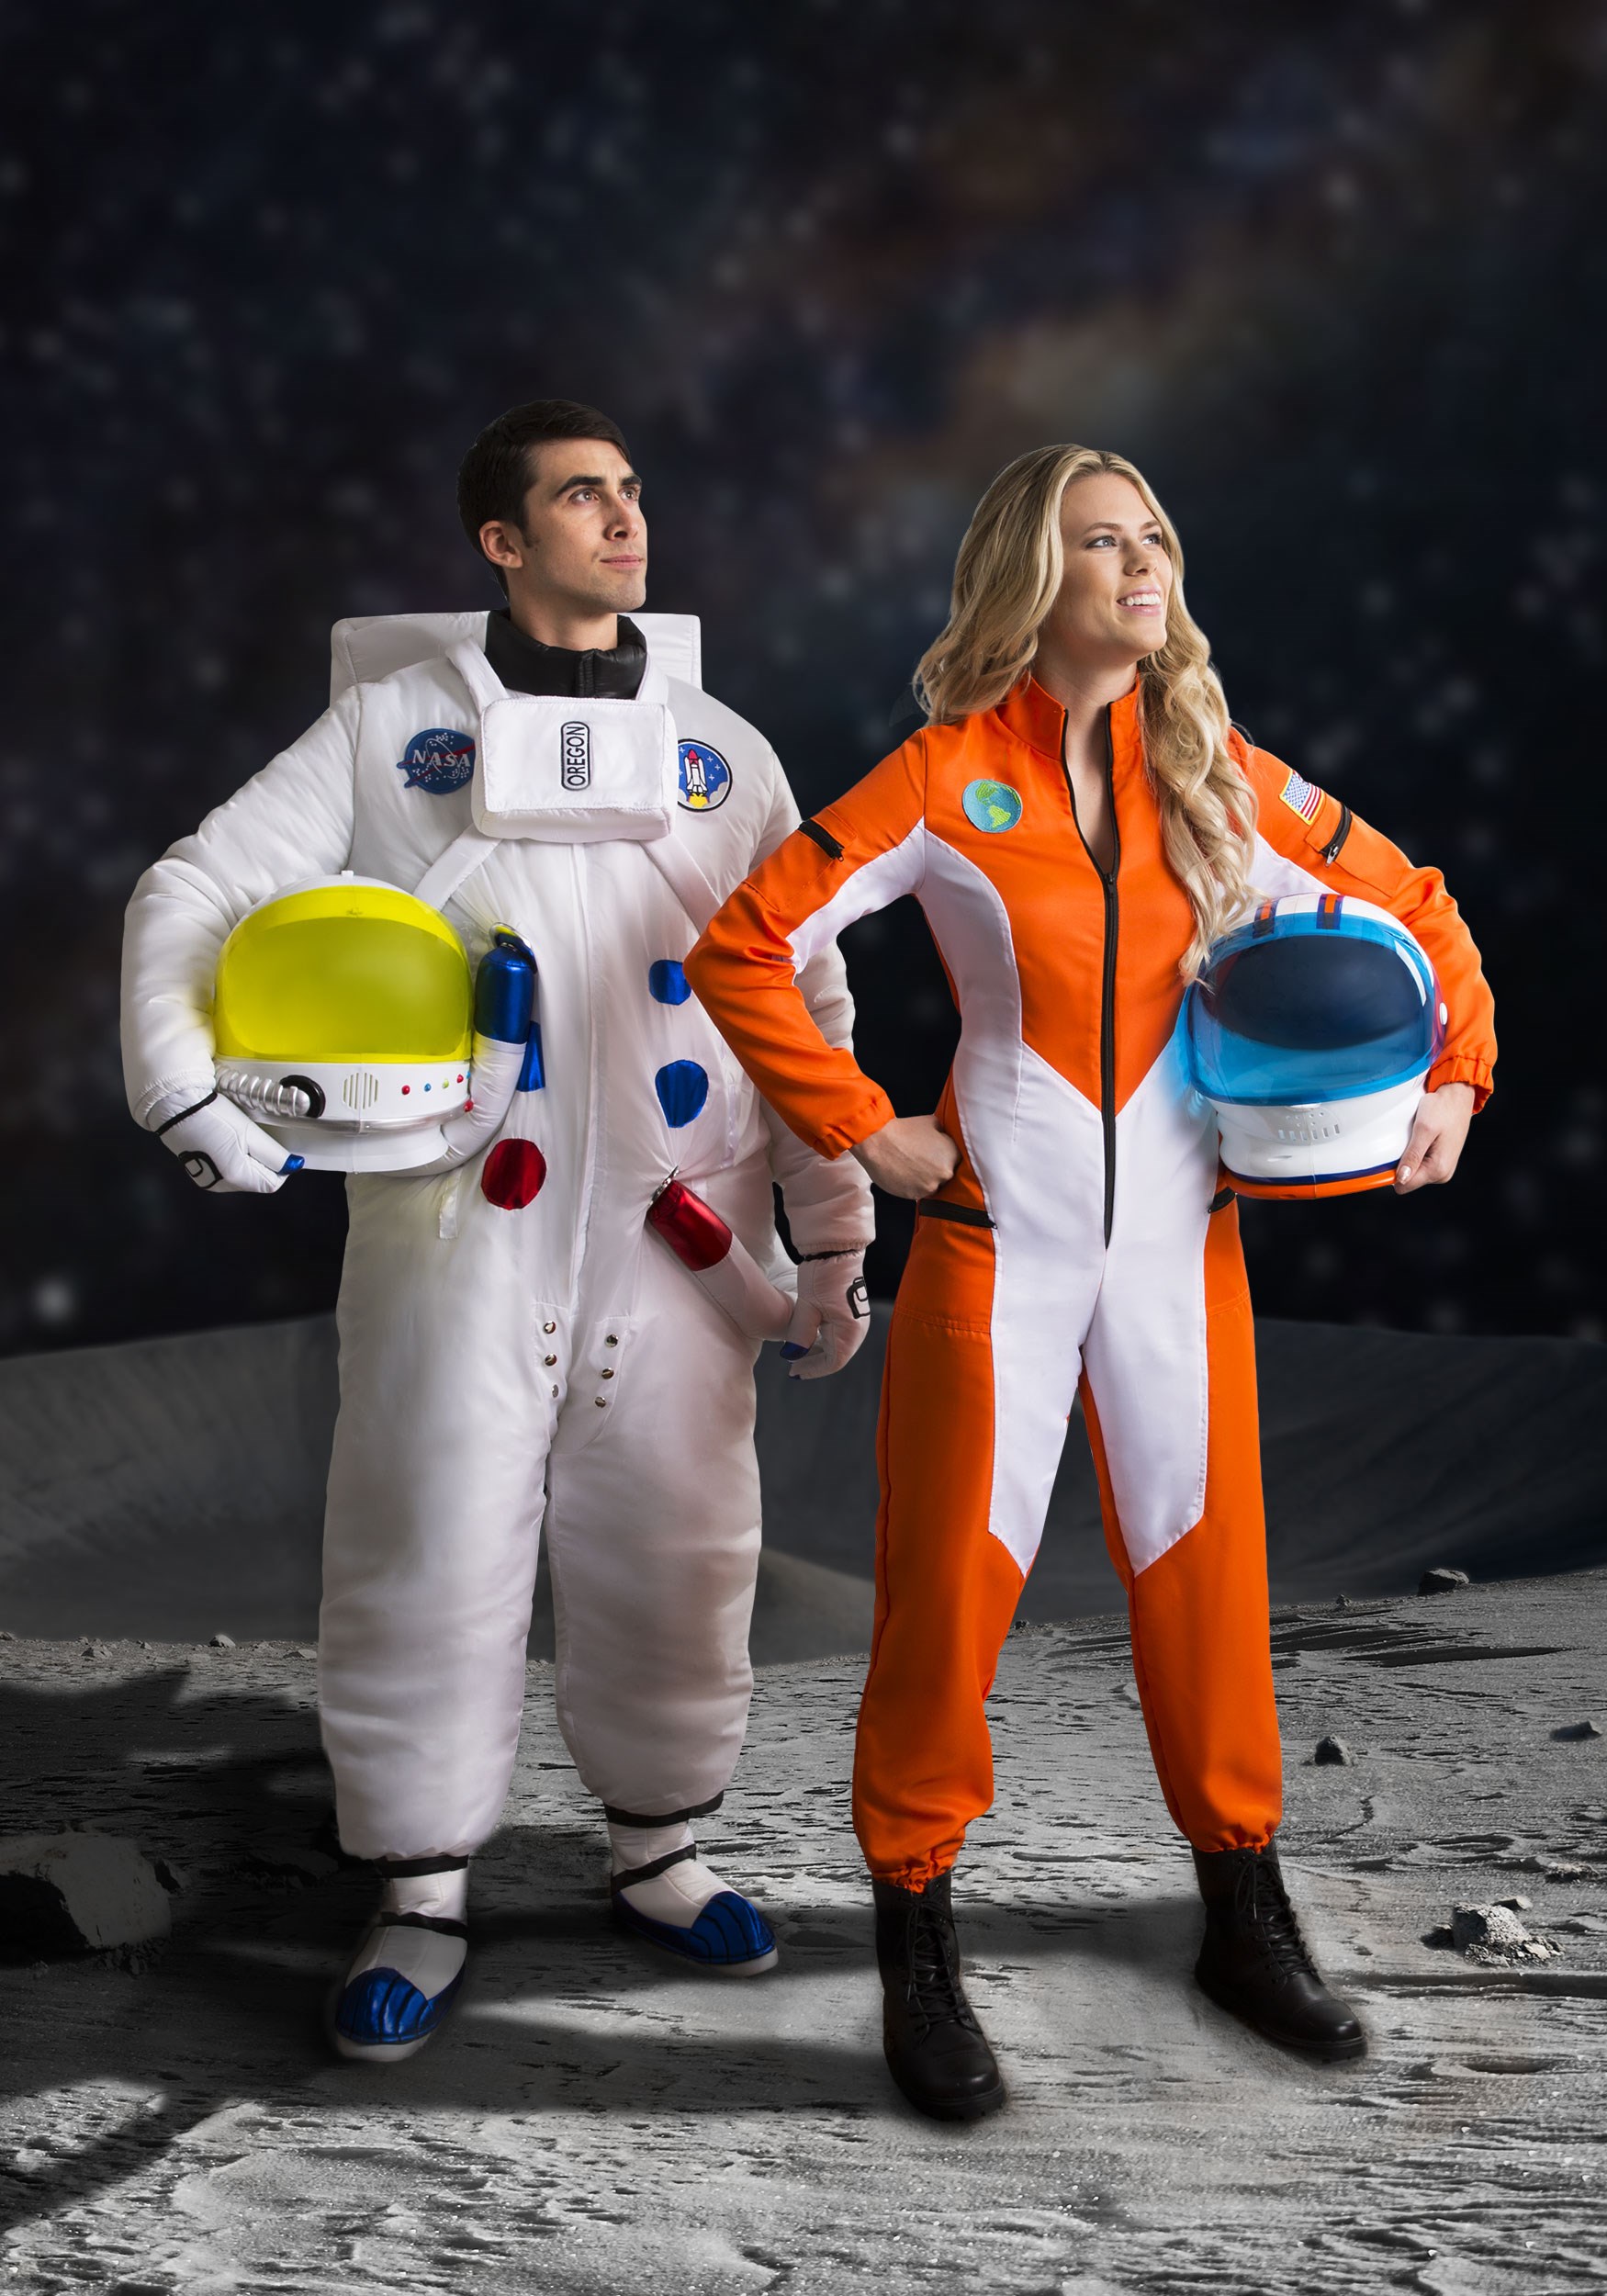 Astronaut Jumpsuit Fancy Dress Costume For Women , Women Fancy Dress Costumes